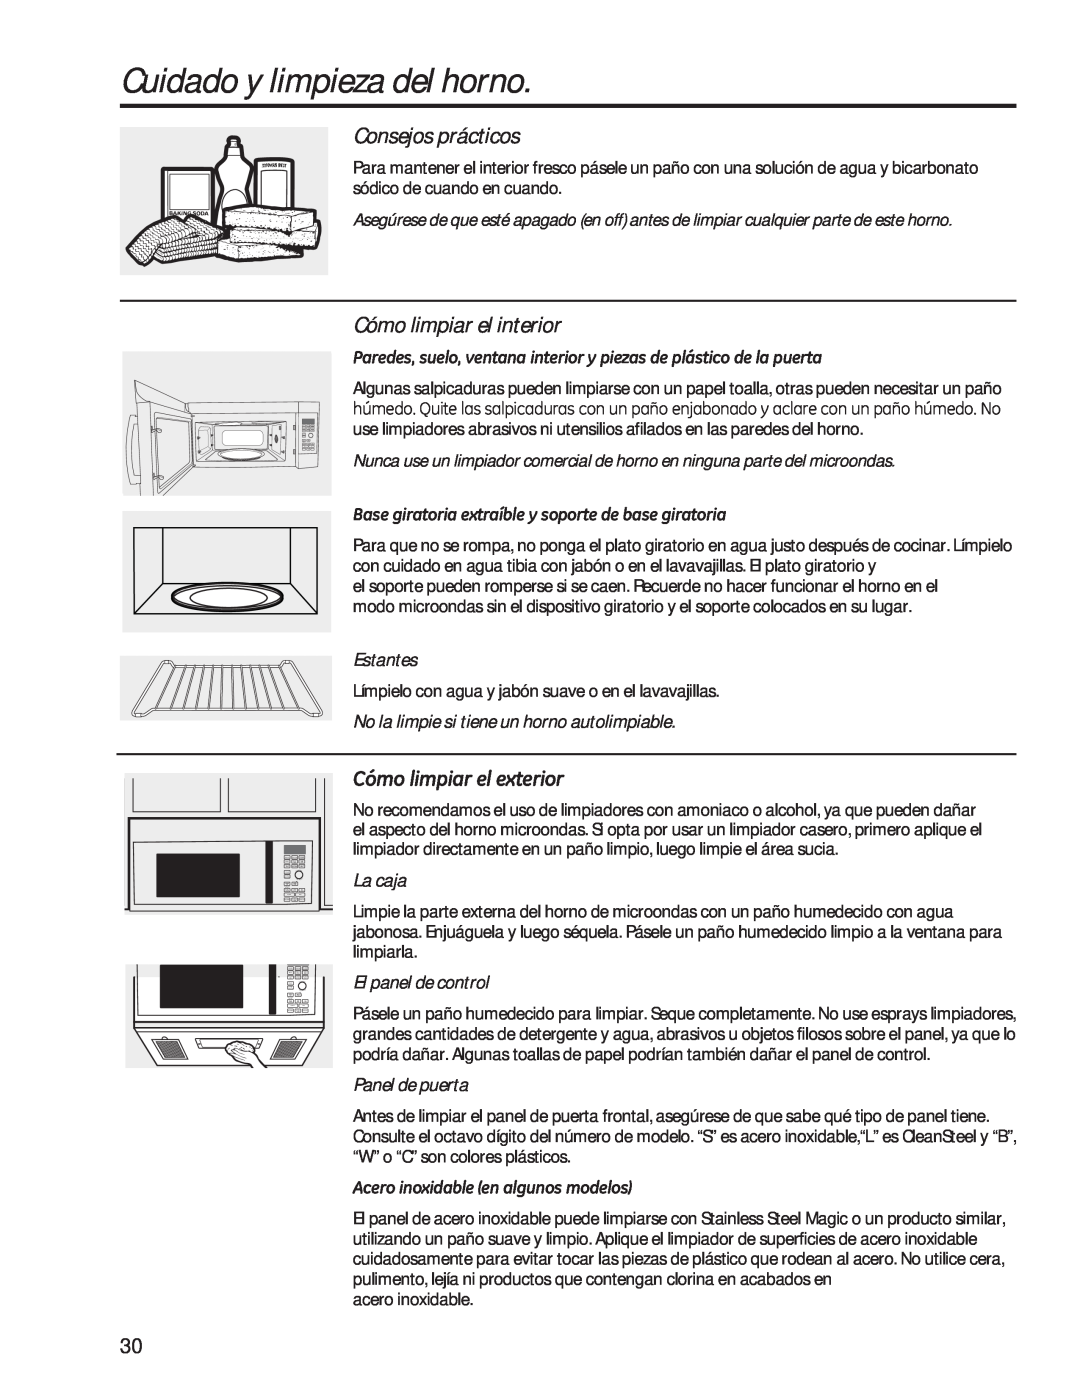 GE PVM9179 Cuidado y limpieza del horno, Consejos prácticos, Cómo limpiar el interior, yPROLPSLDUHOHWHULRU, Estantes 